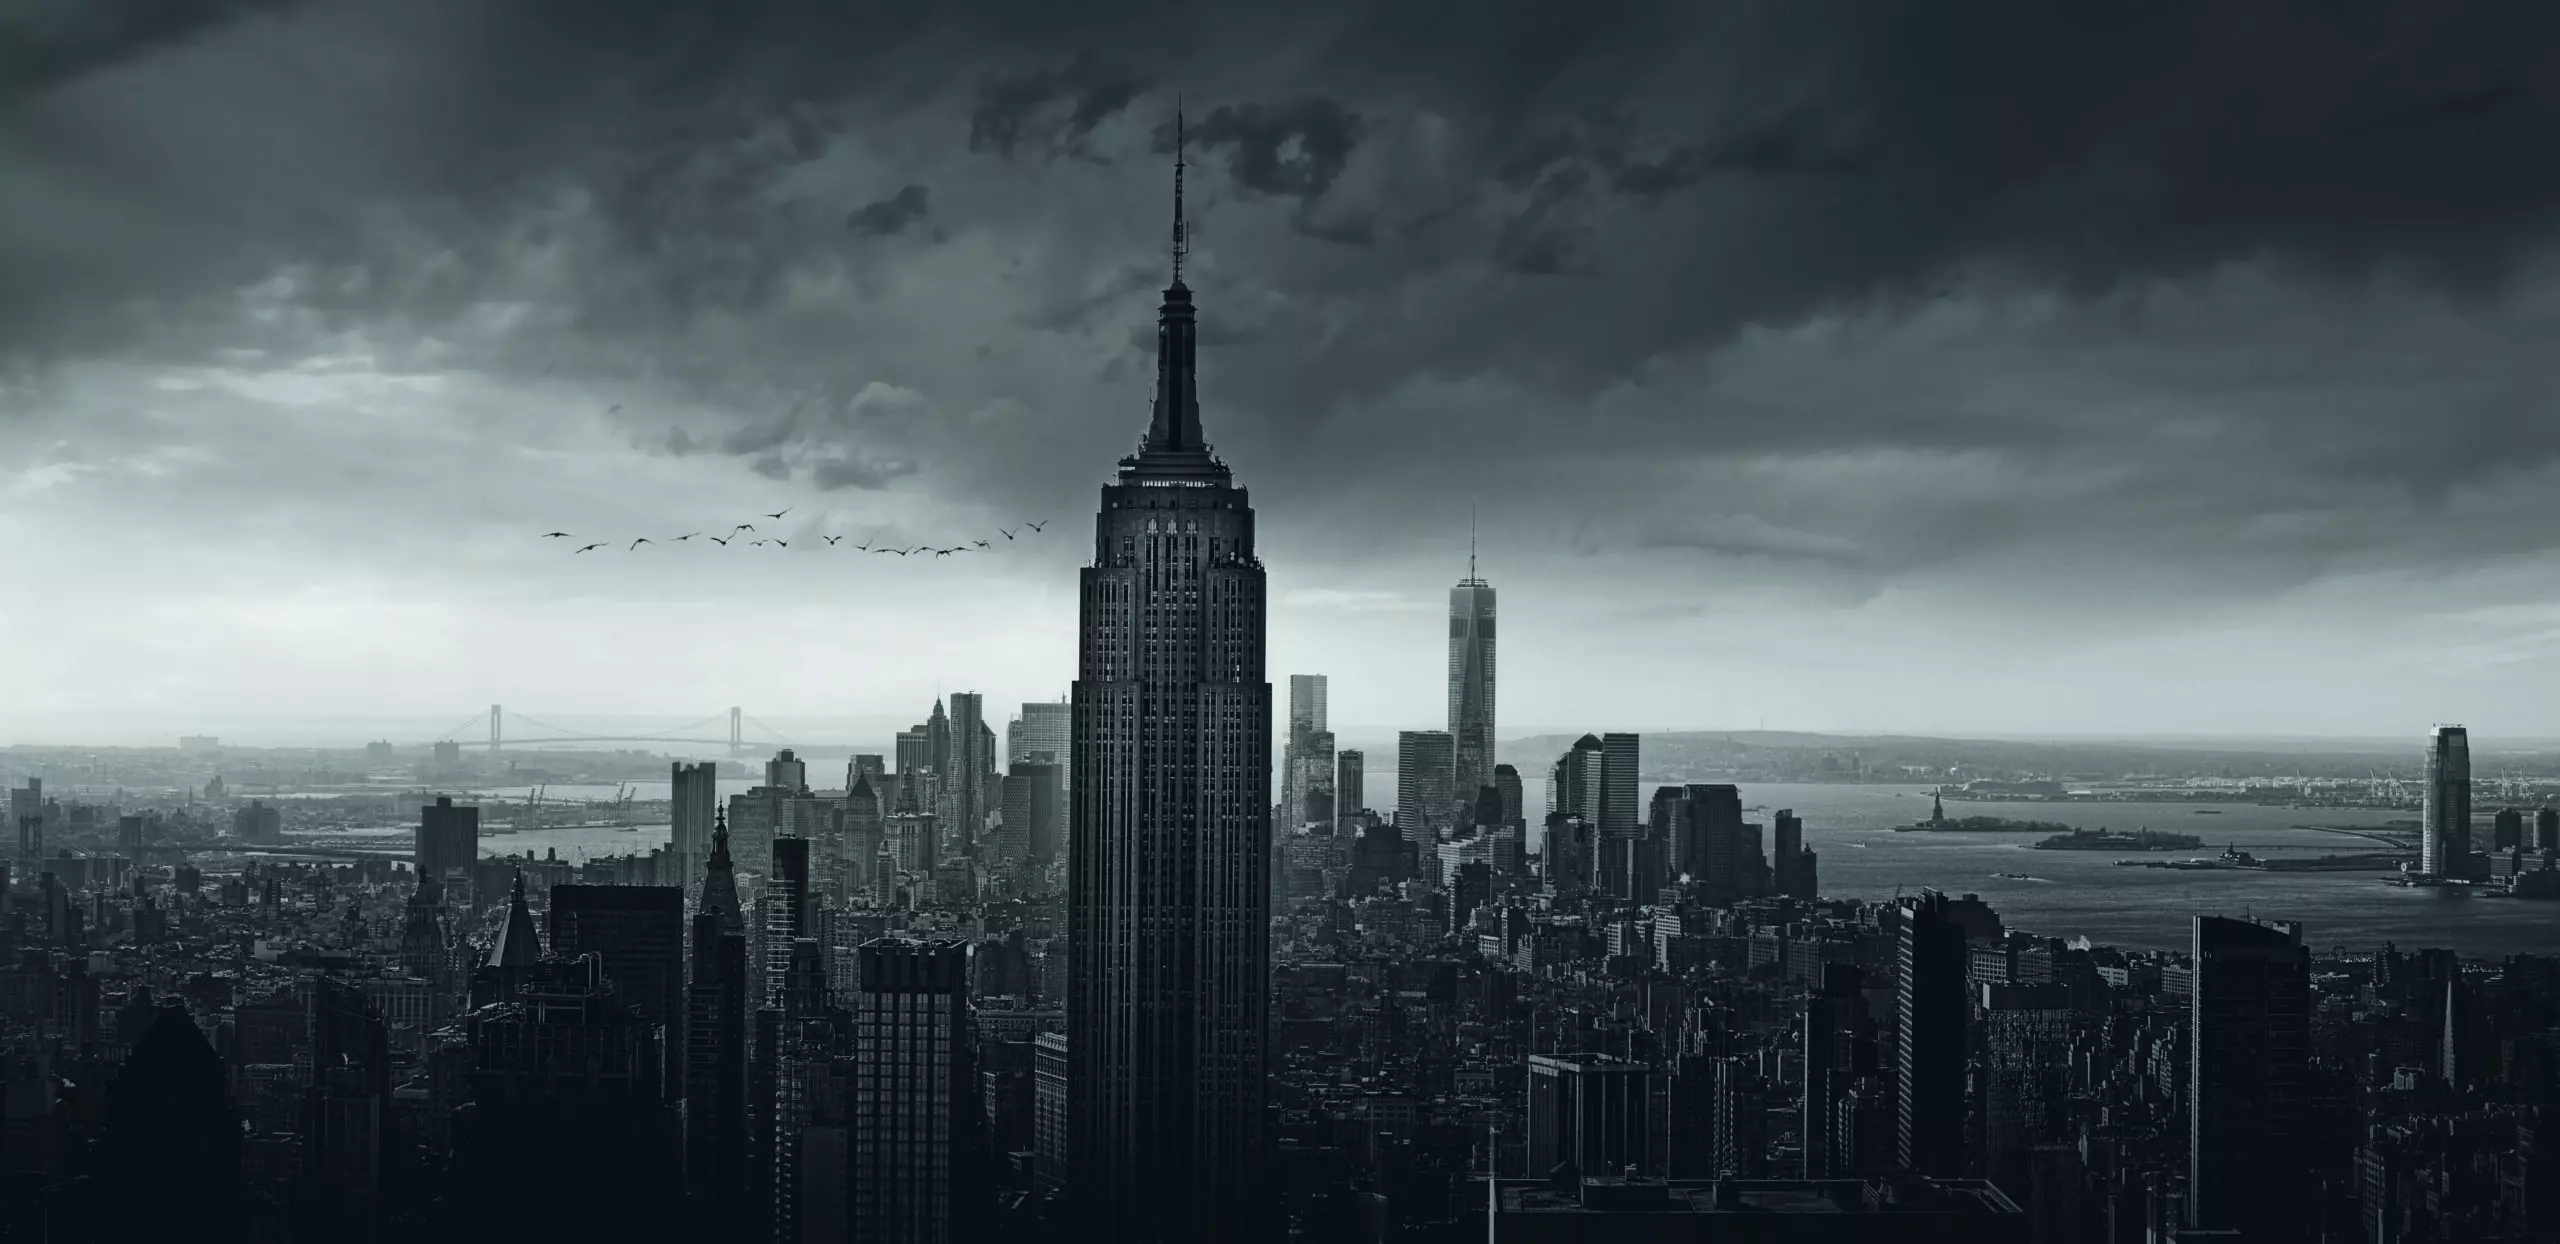 Wandbild (5845) New York Rockefeller View by Wim Schuurmans, 1x.com präsentiert: Architektur,Häuser,Skylines,Sehenswürdigkeiten